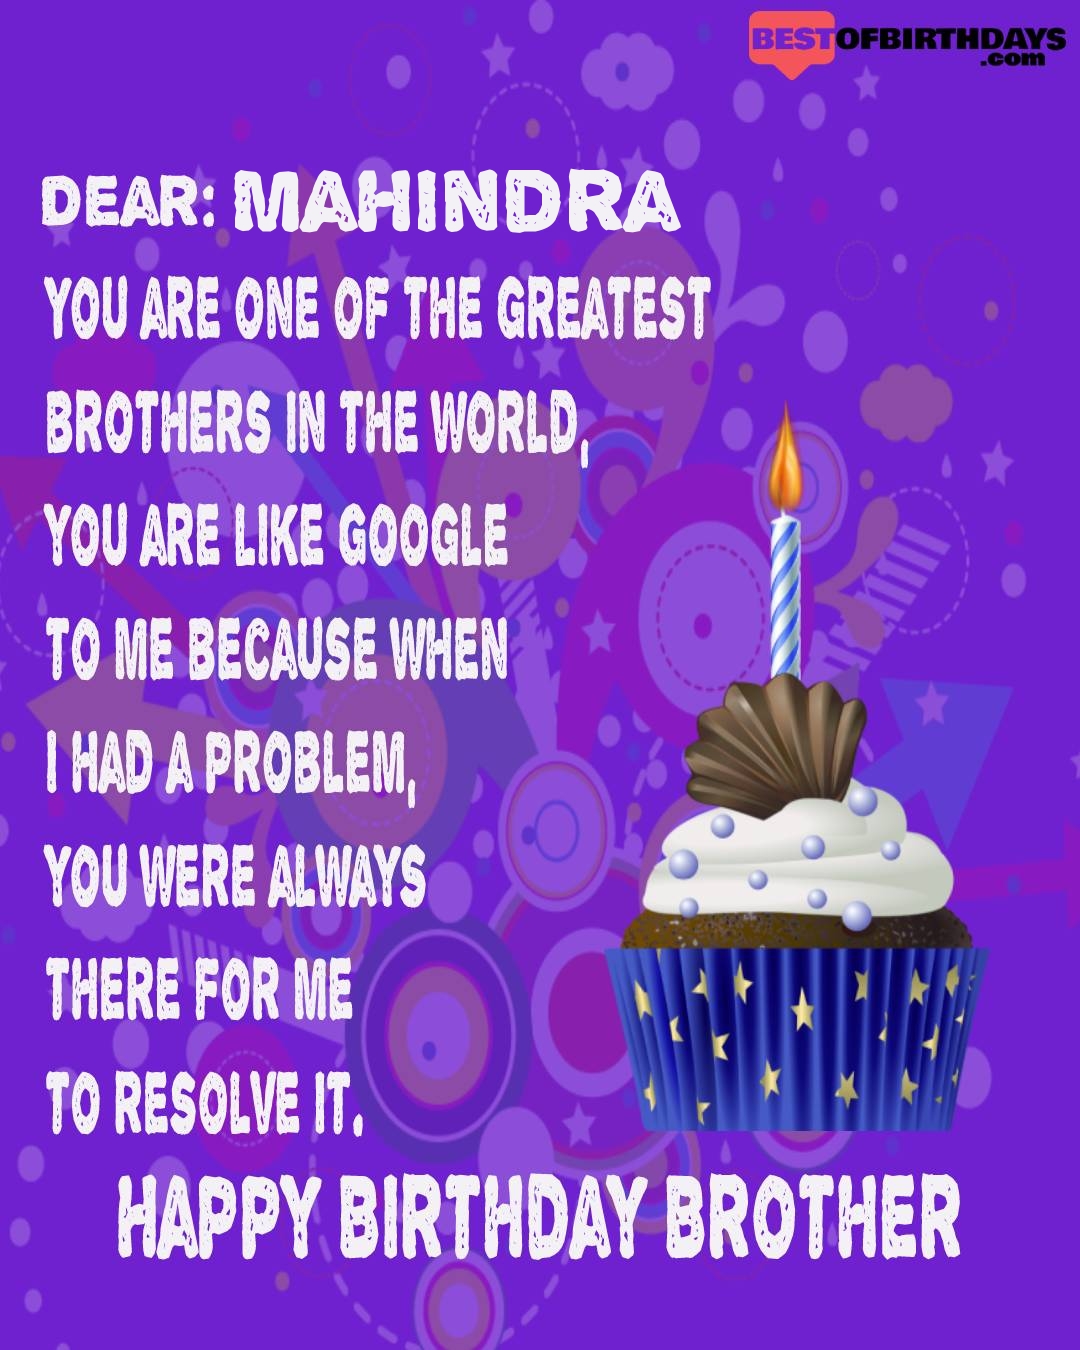 Happy birthday mahindra bhai brother bro